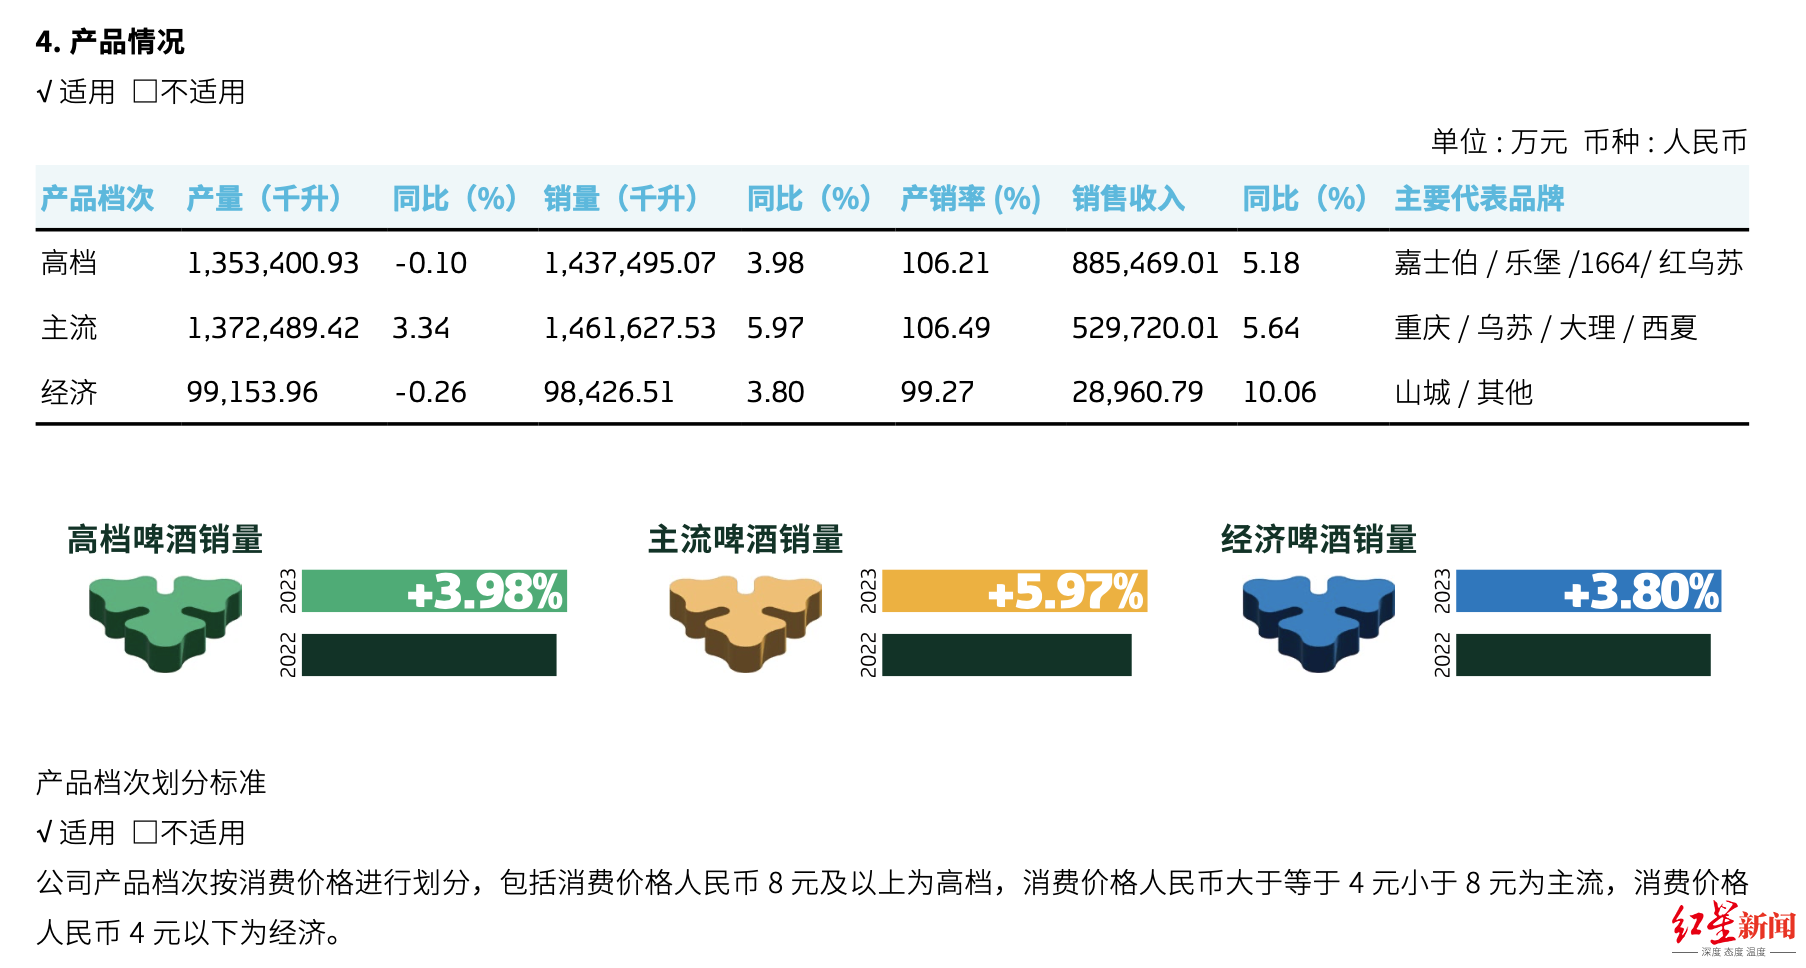 重慶啤酒高端化戰略一年后 4元以下產品營收增幅最大 高檔產品增幅最差